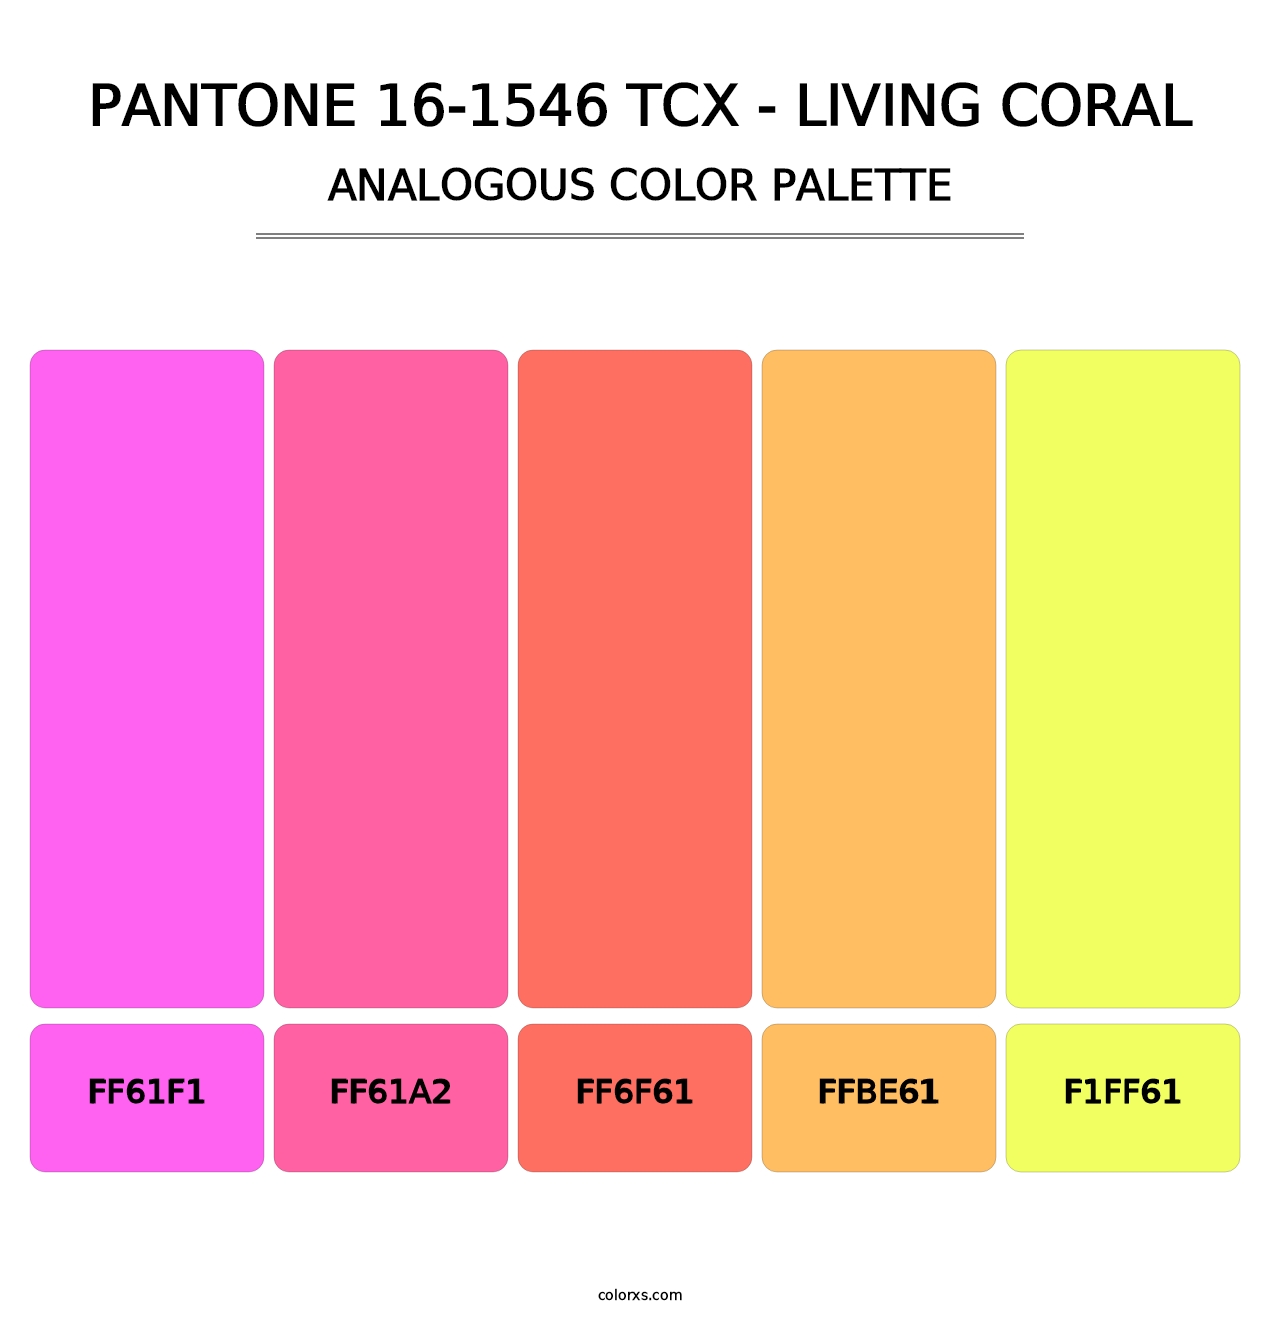 PANTONE 16-1546 TCX - Living Coral - Analogous Color Palette